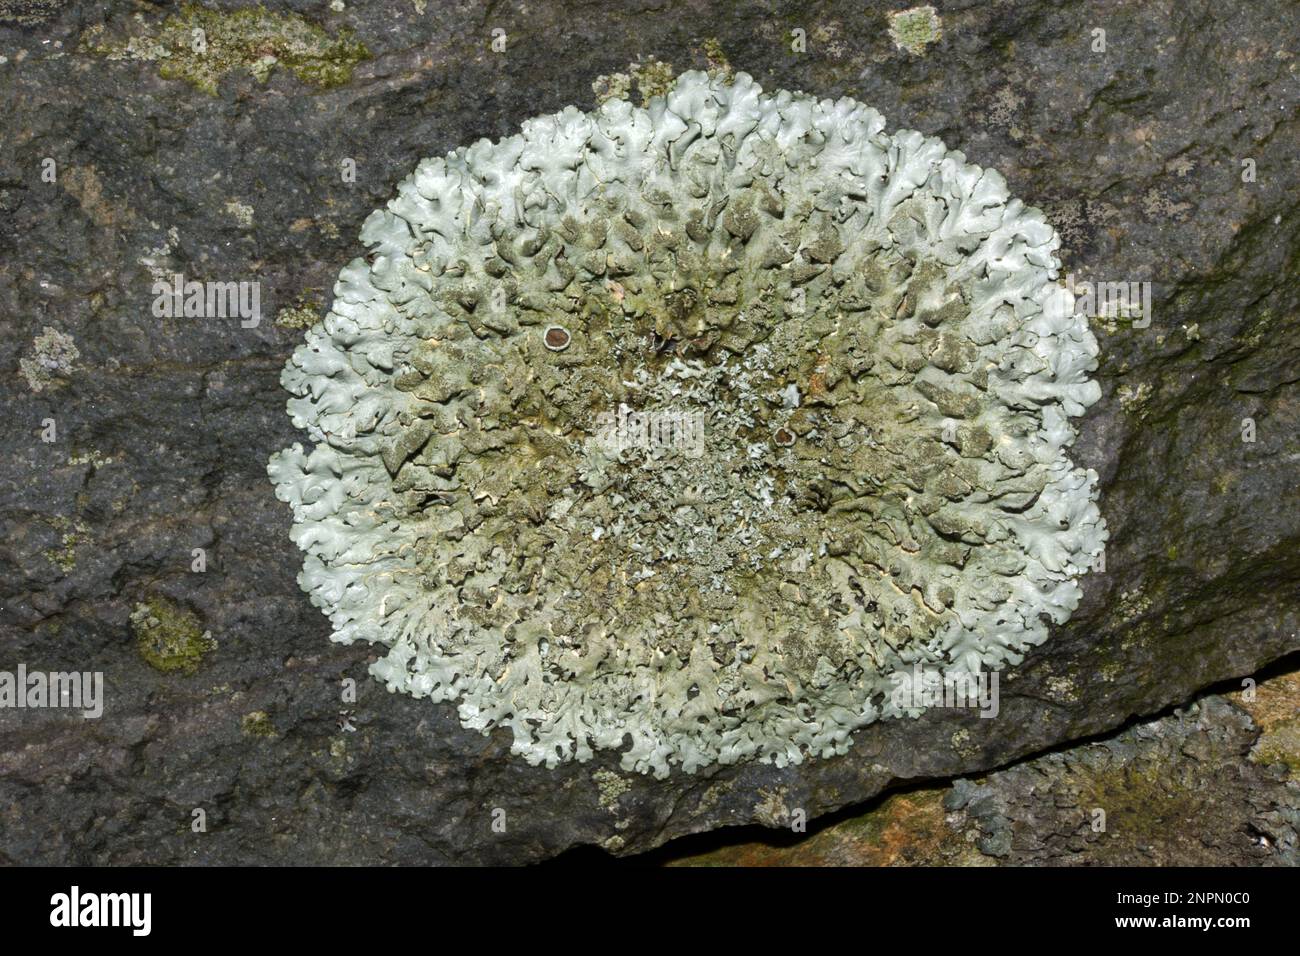 La cospersa Xanthoparmelia (shield roccioso pepperato) è ampiamente distribuita in zone temperate che crescono su rocce silicee. Foto Stock